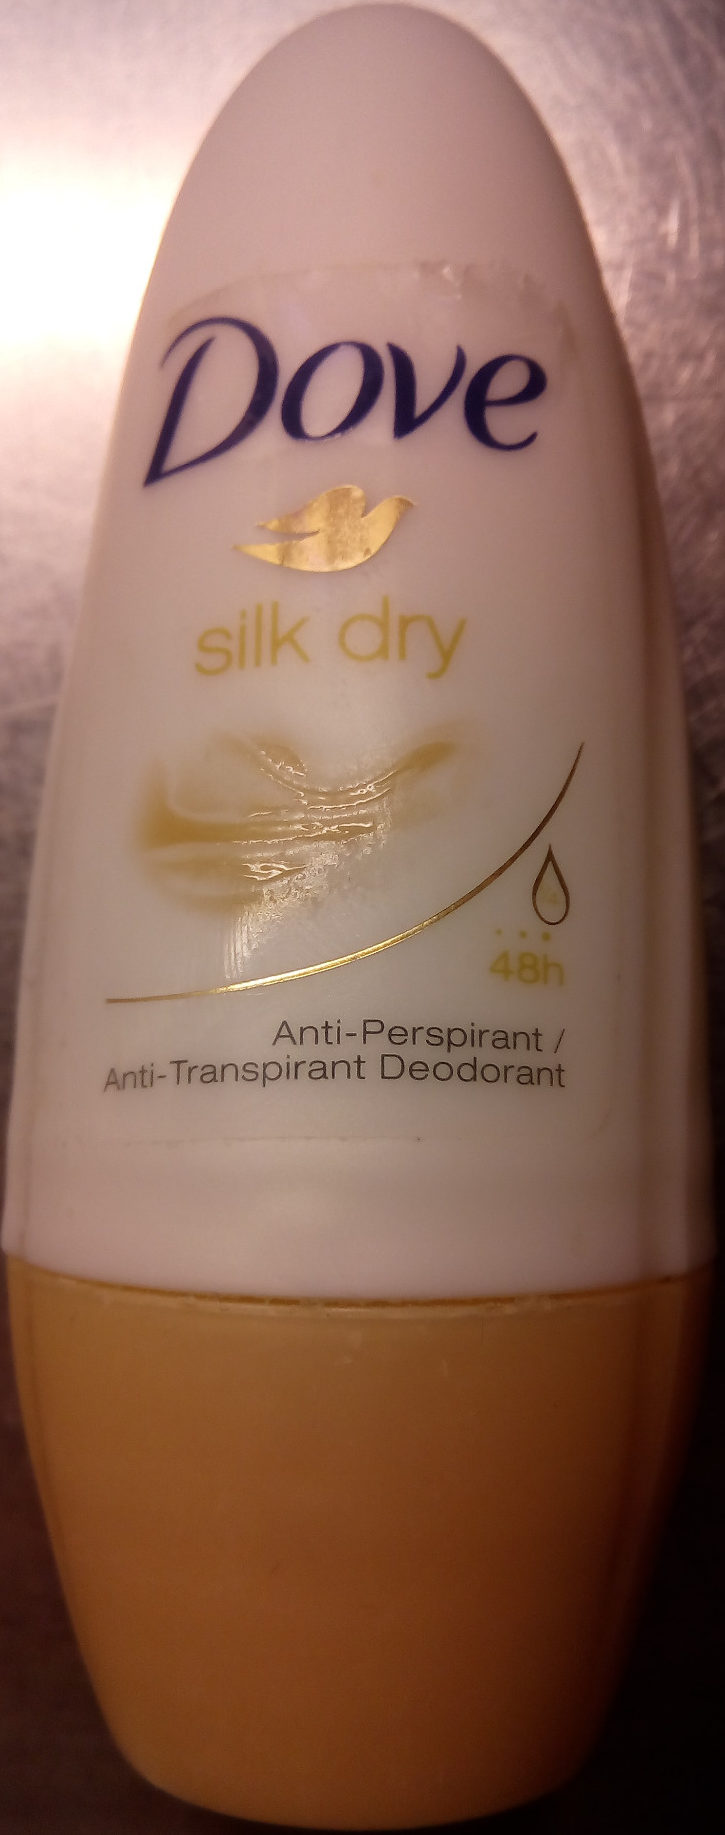 Dove silk dry 24h - Produit - en